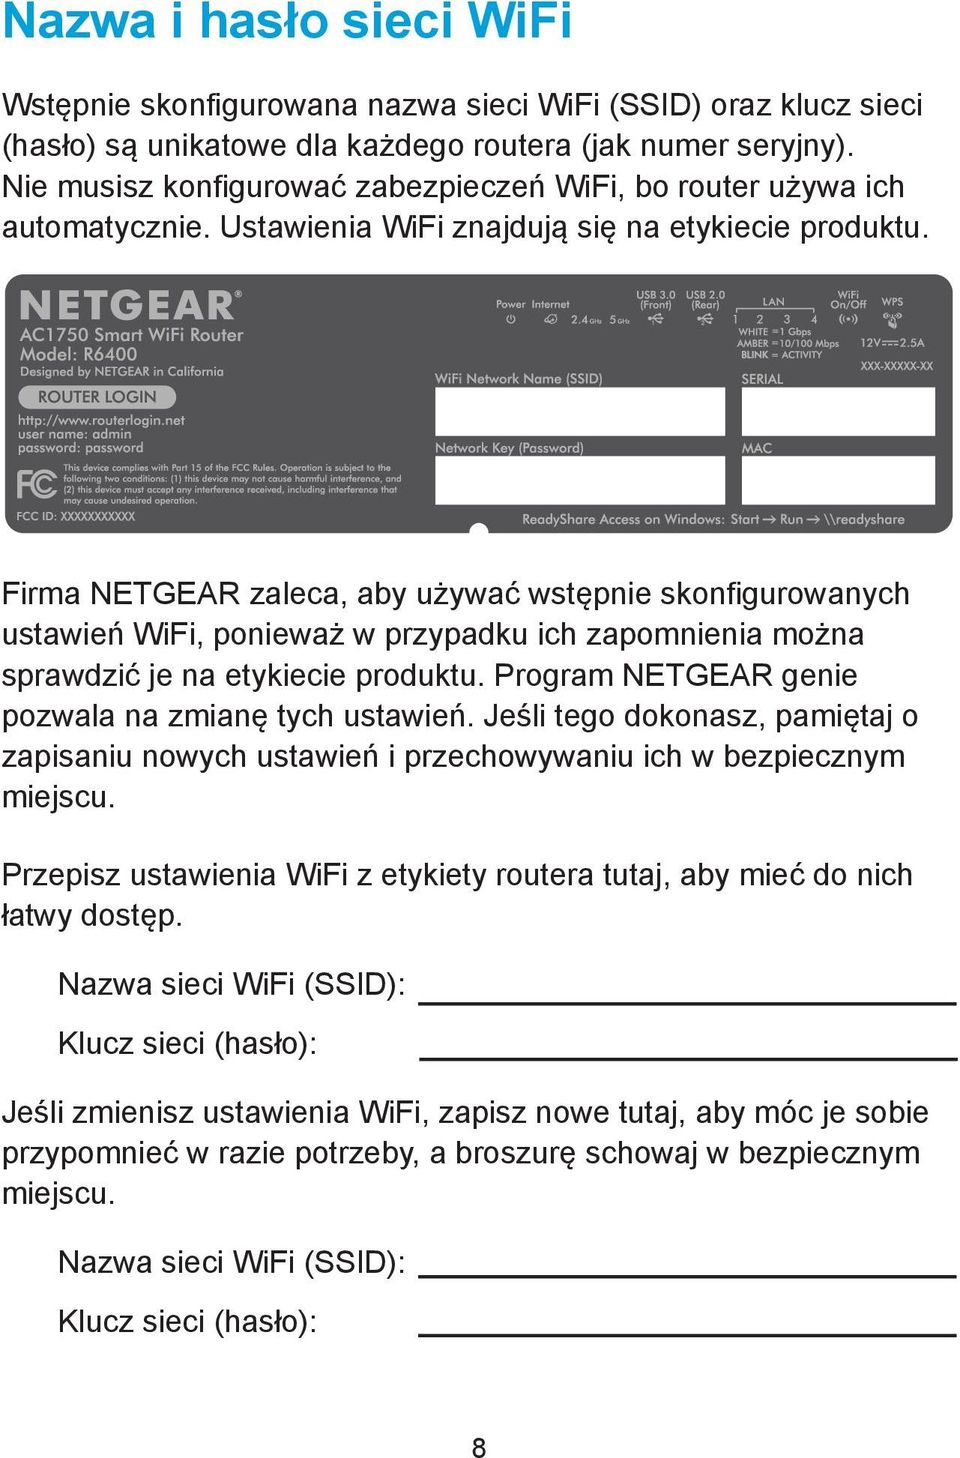 Firma NETGEAR zaleca, aby używać wstępnie skonfigurowanych ustawień WiFi, ponieważ w przypadku ich zapomnienia można sprawdzić je na etykiecie produktu.